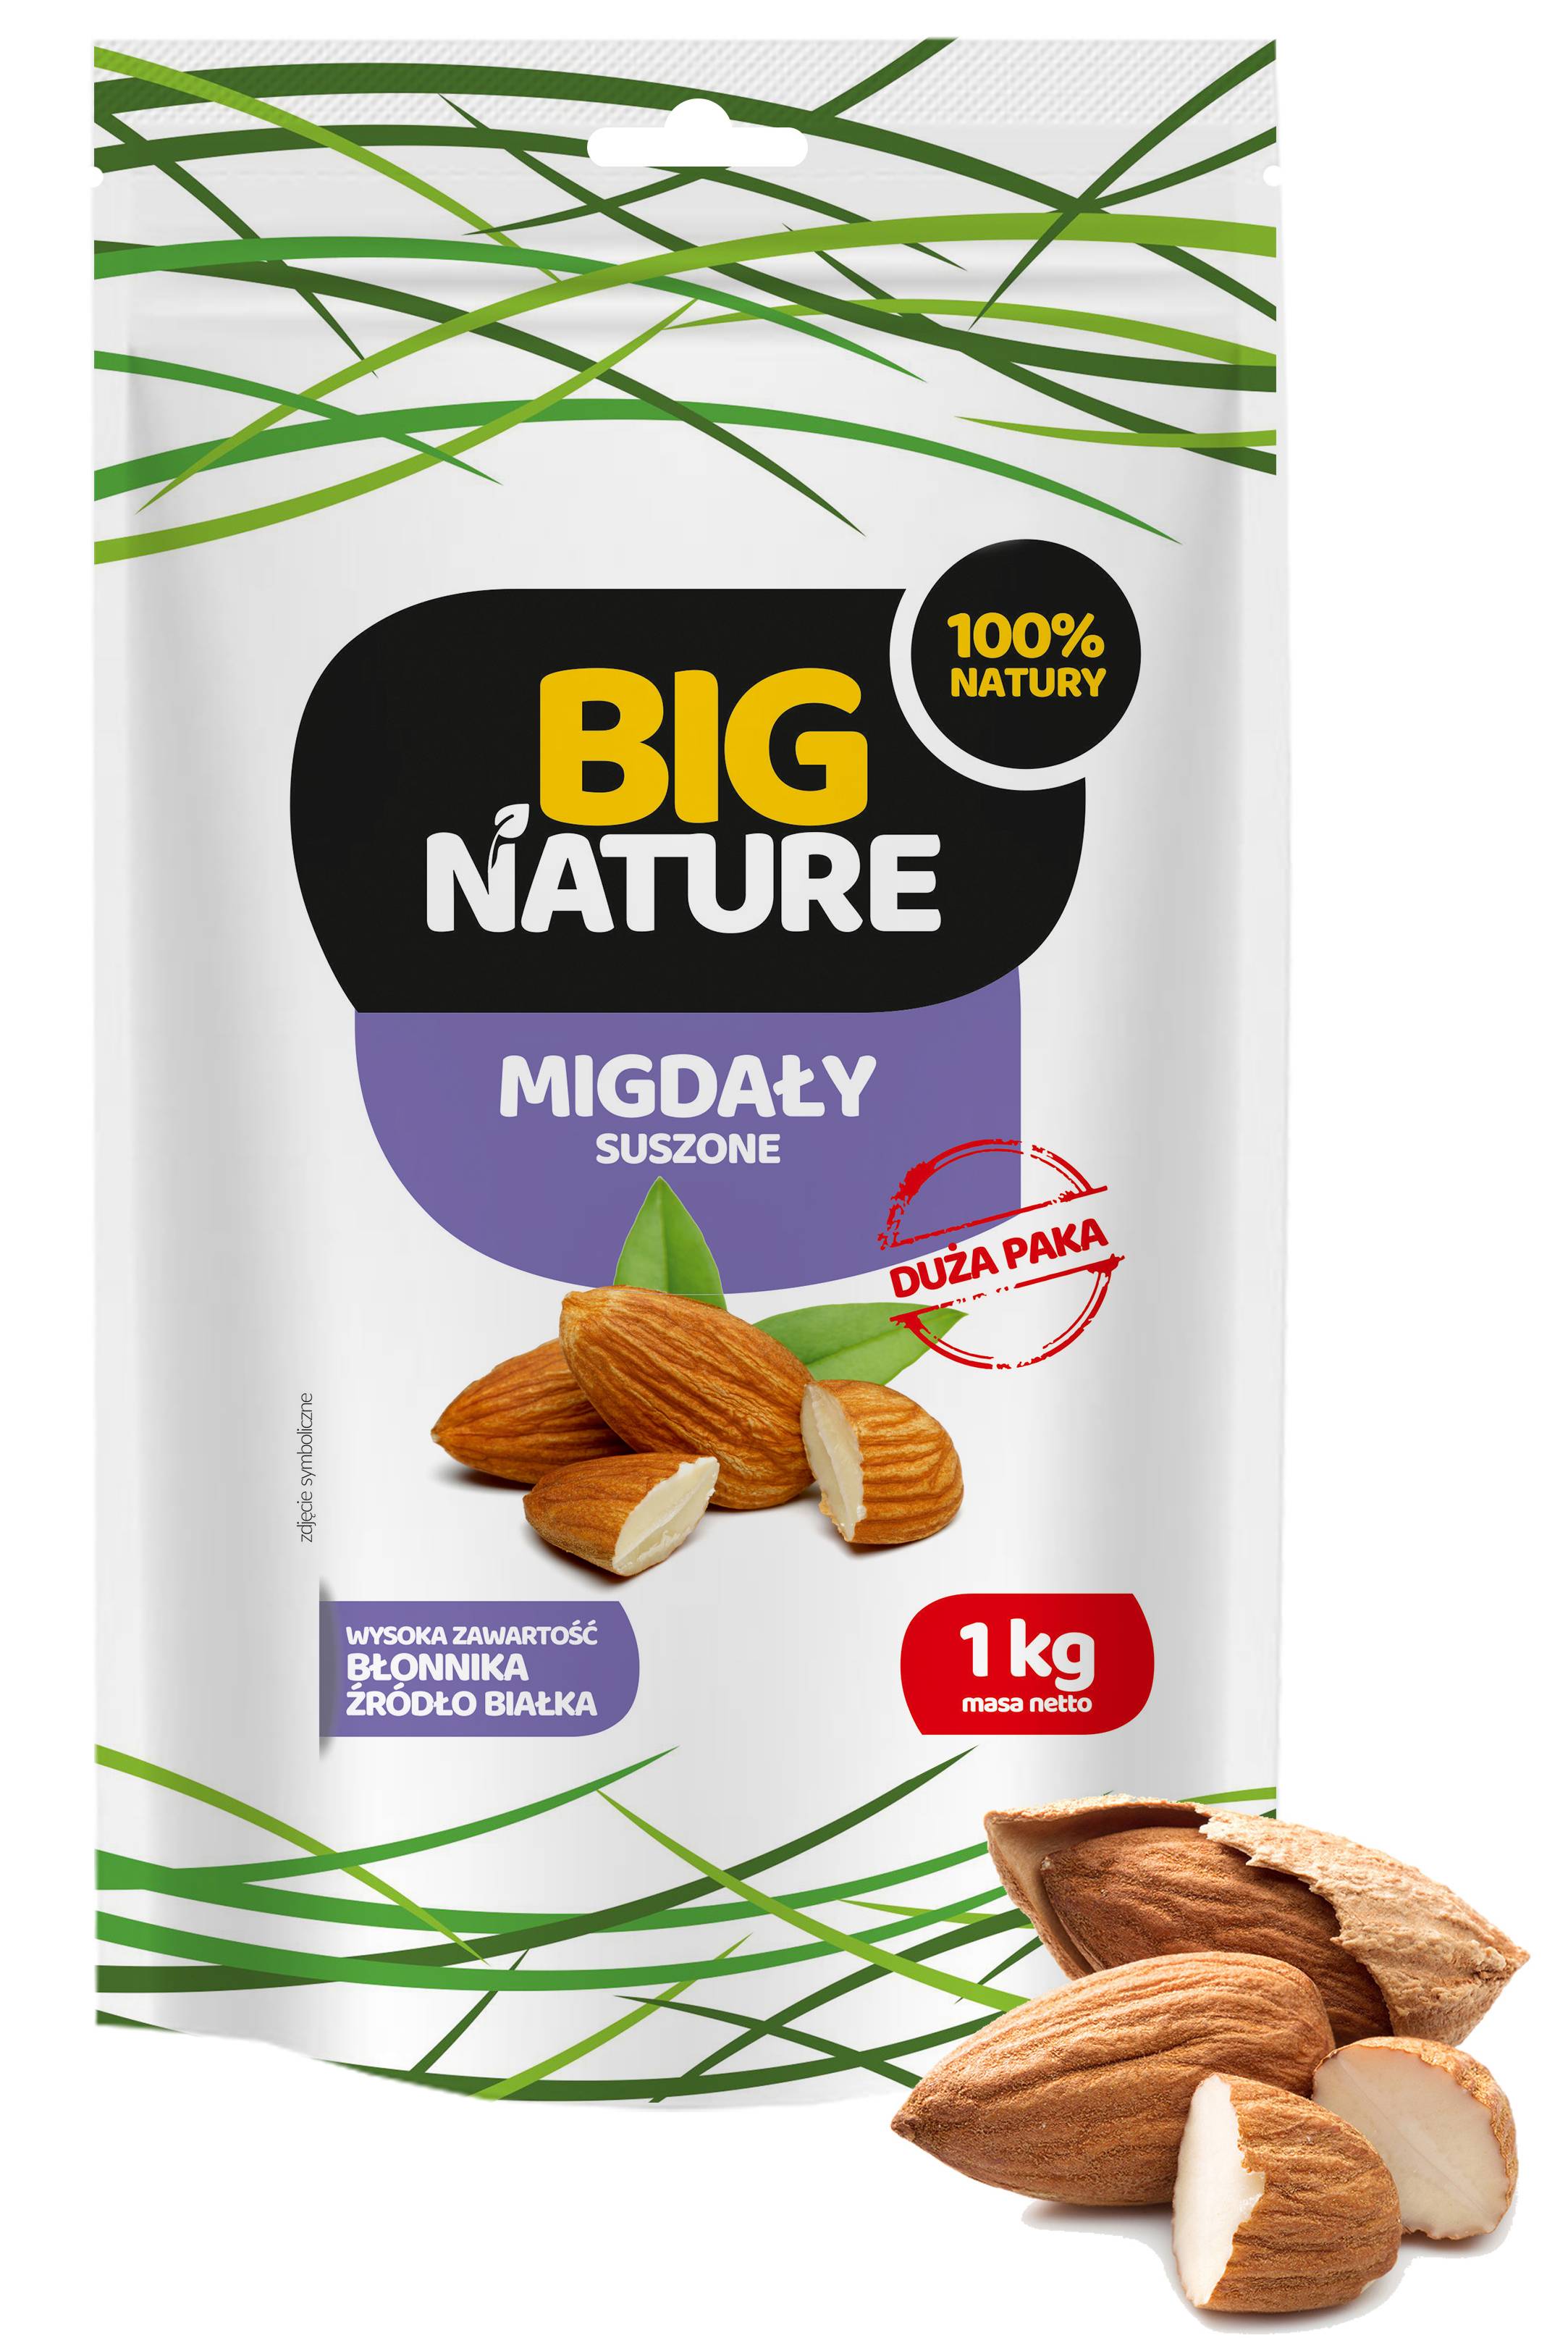 Migdale, 1kg - big nature